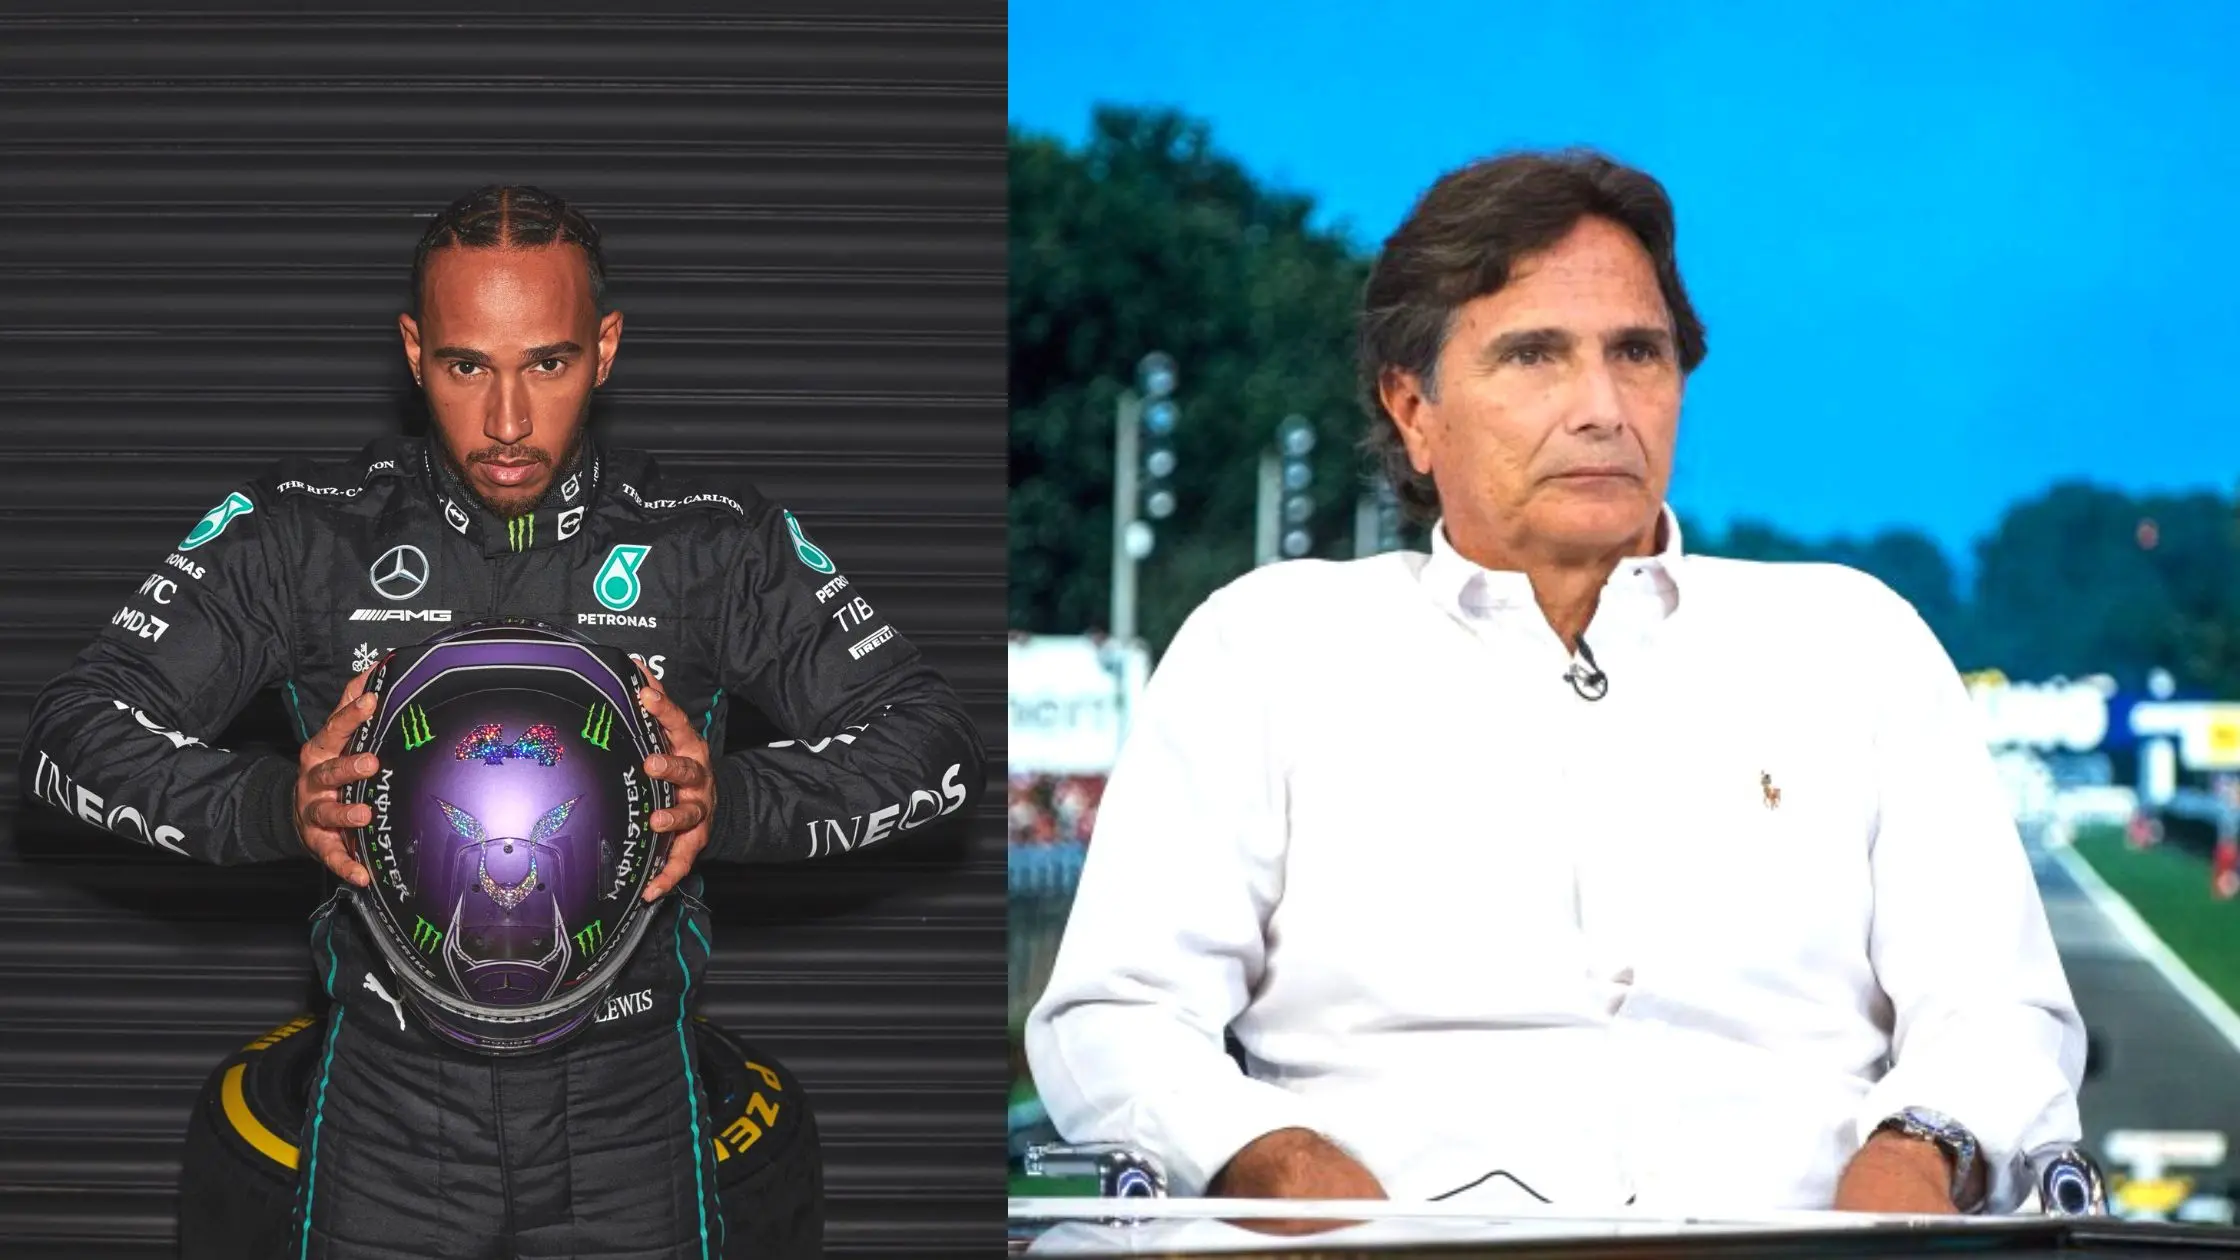 Nelson Piquet Comments On Lewis Hamilton